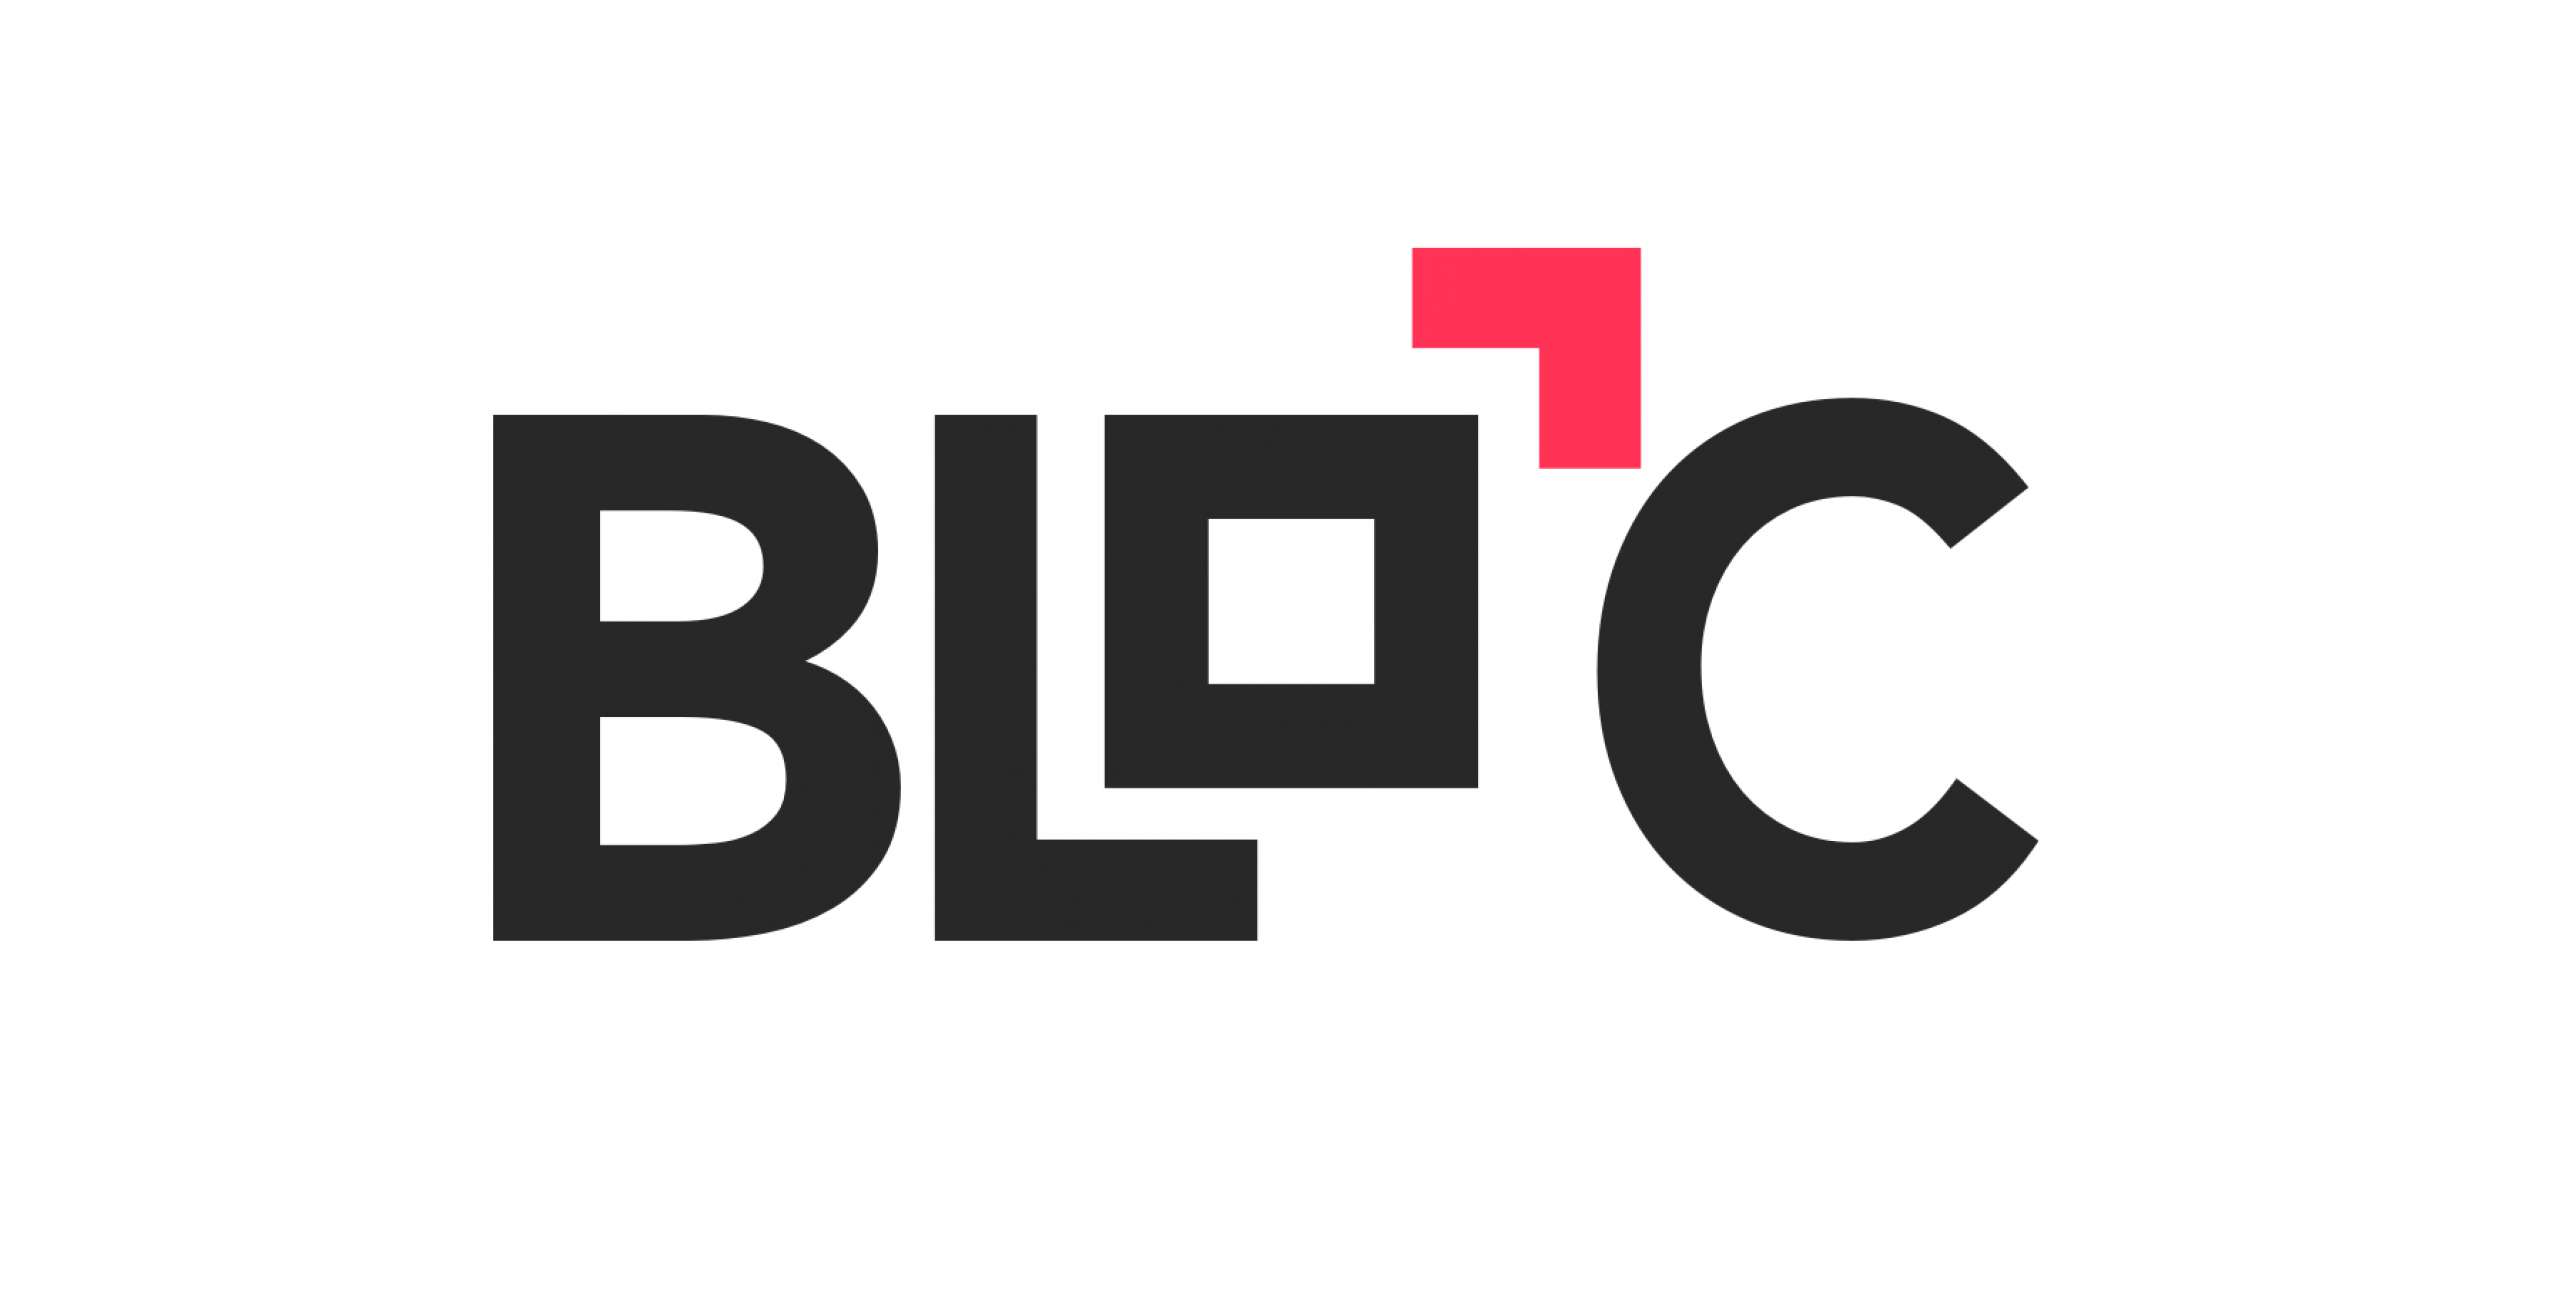 BLOC logo